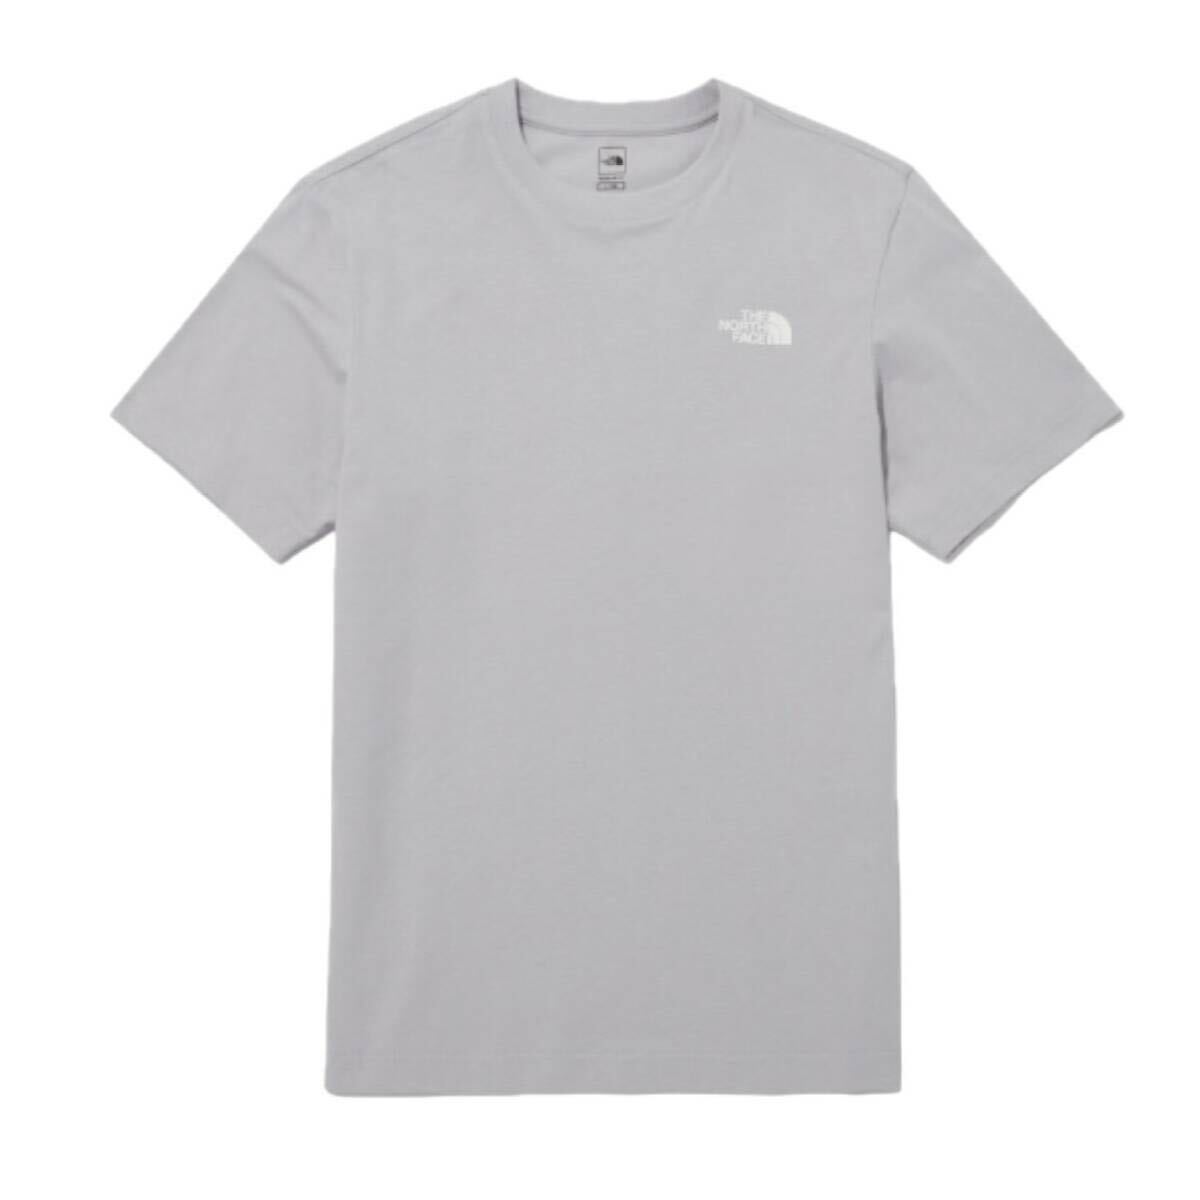 ザ ノースフェイス Tシャツ NT7U ライトグレー XSサイズ コットン素材 クルーネック シンプルロゴ THE NORTH FACE COTTON S/S TEE 新品の画像4